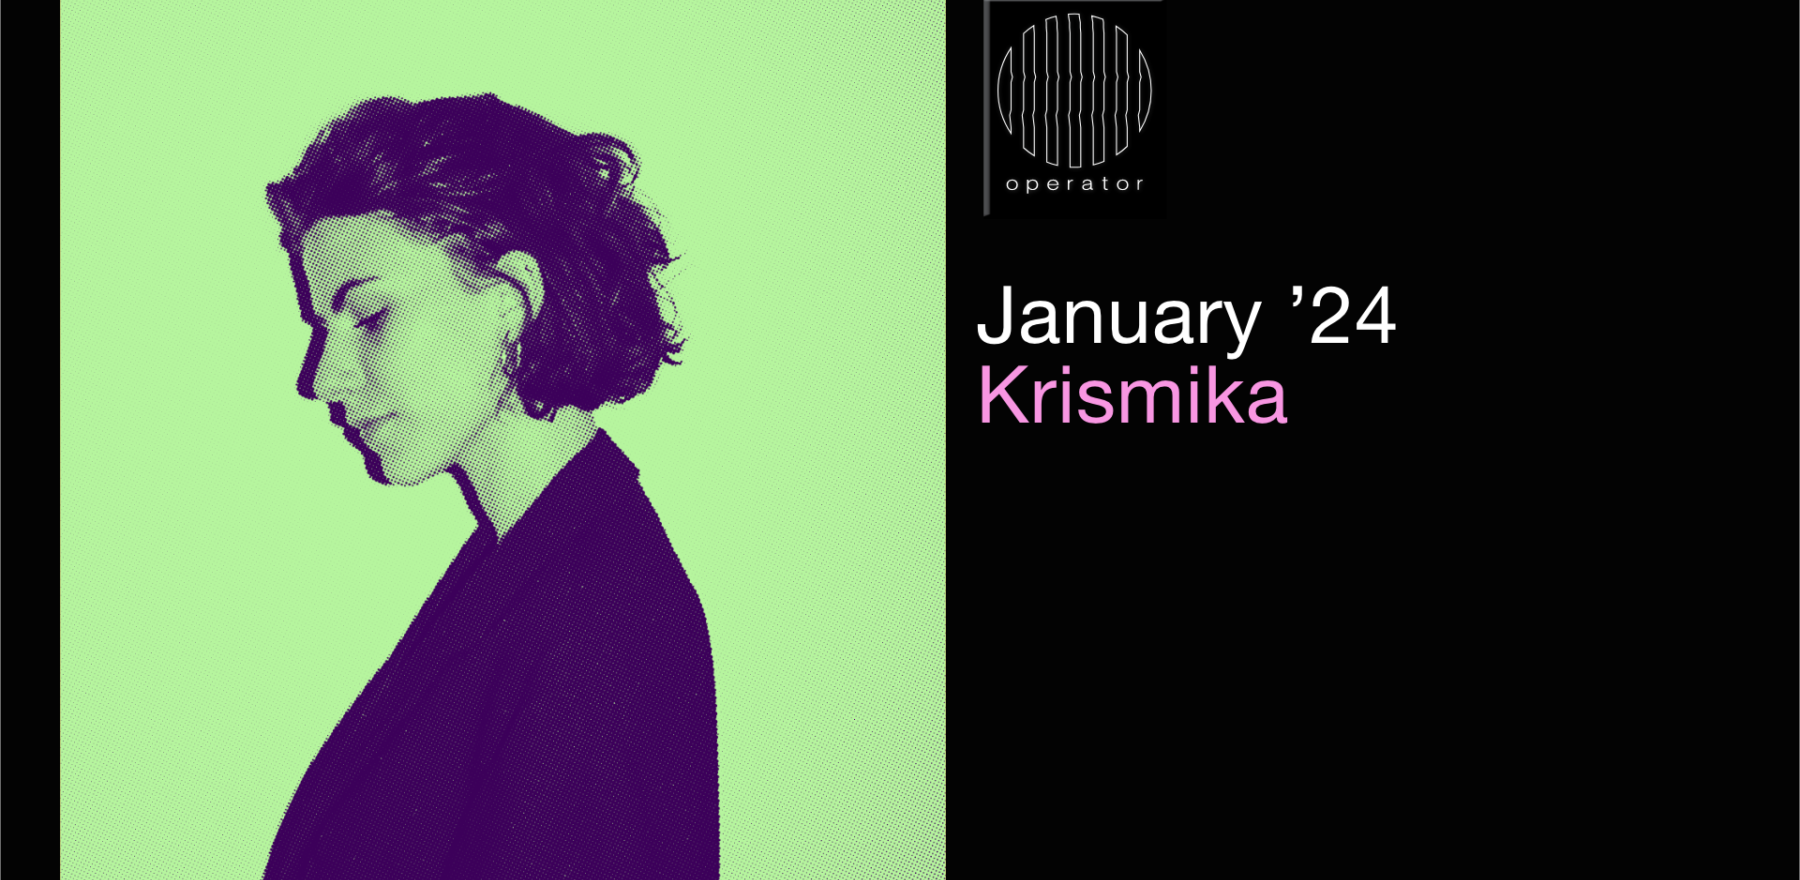 Playlist januari '24 - Operator invites Krismika